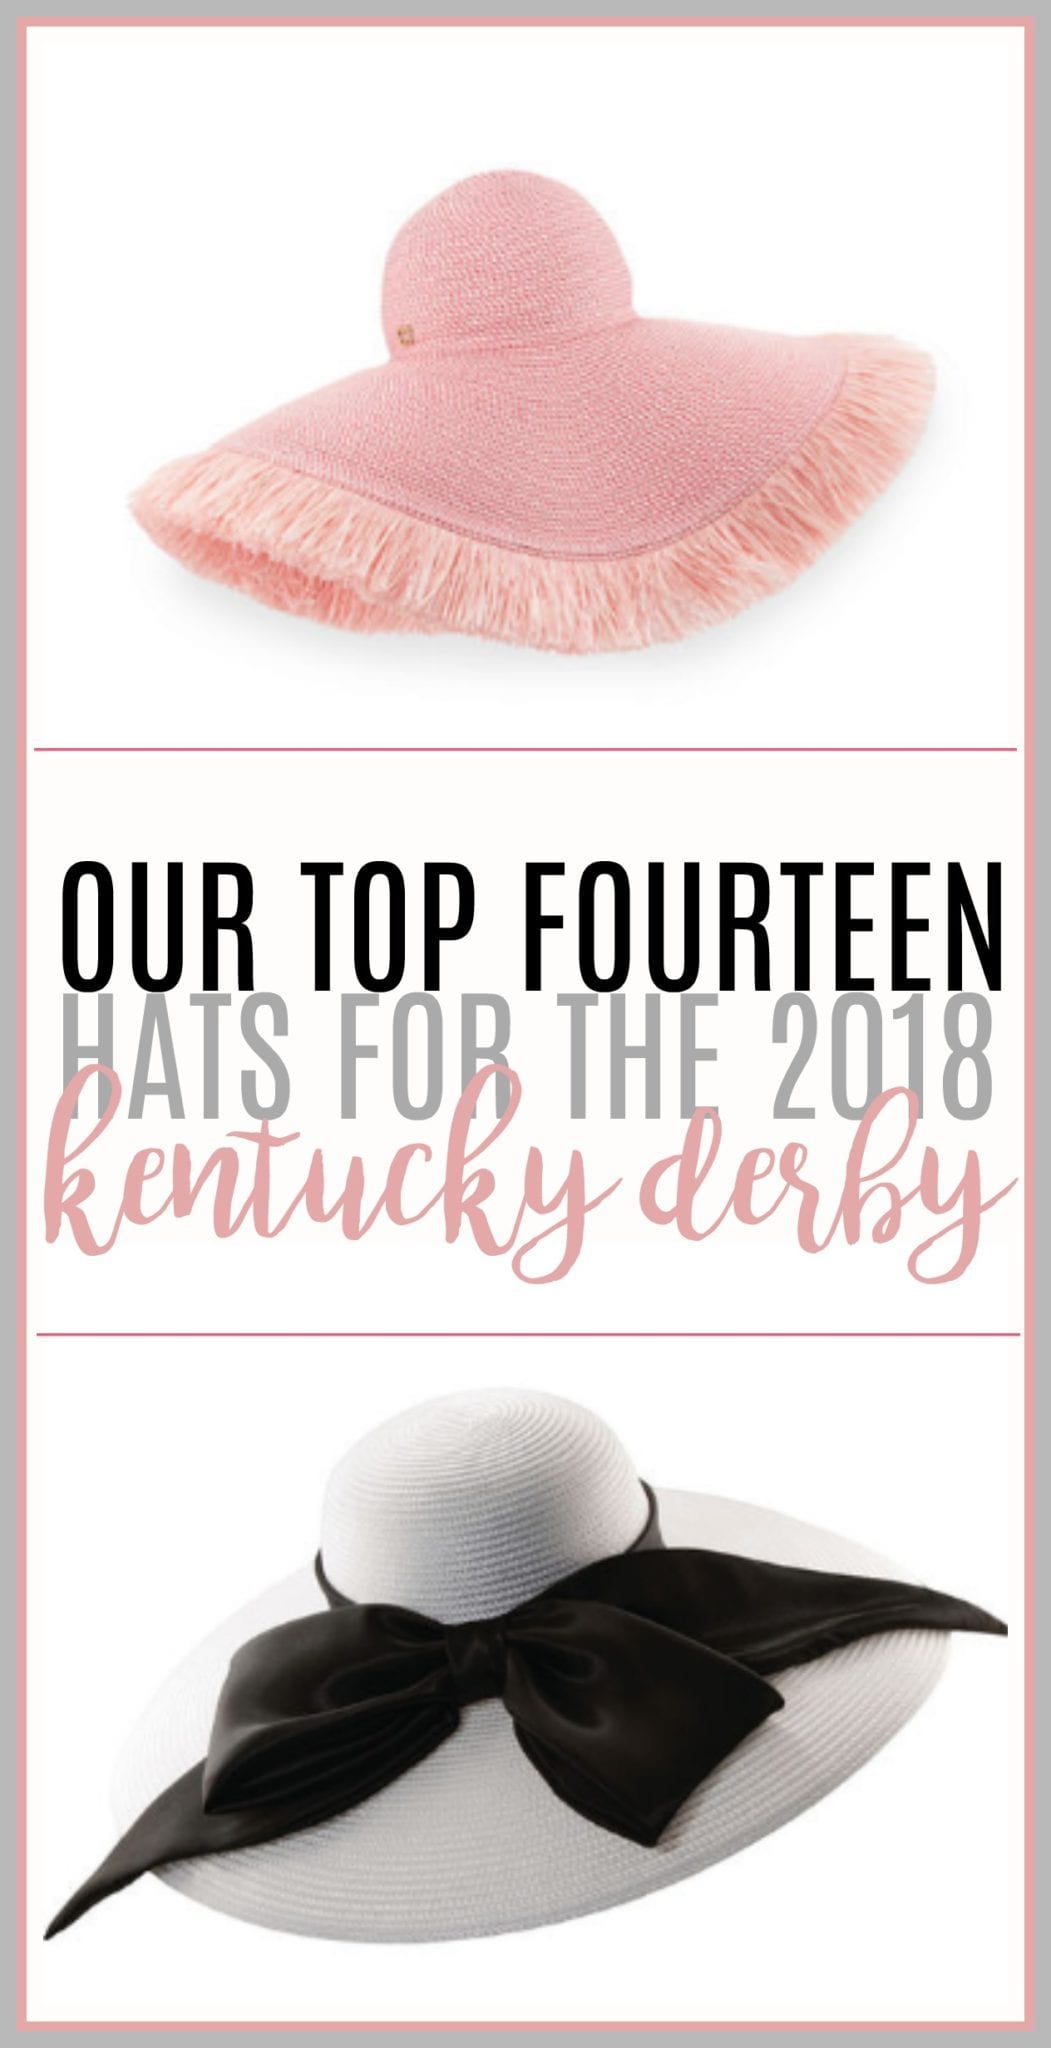 kentucky derby, best hats for the kentucky derby, best summer hats, best hats summer 2018, kentucky derby outfit, kentucky derby outfits 2018